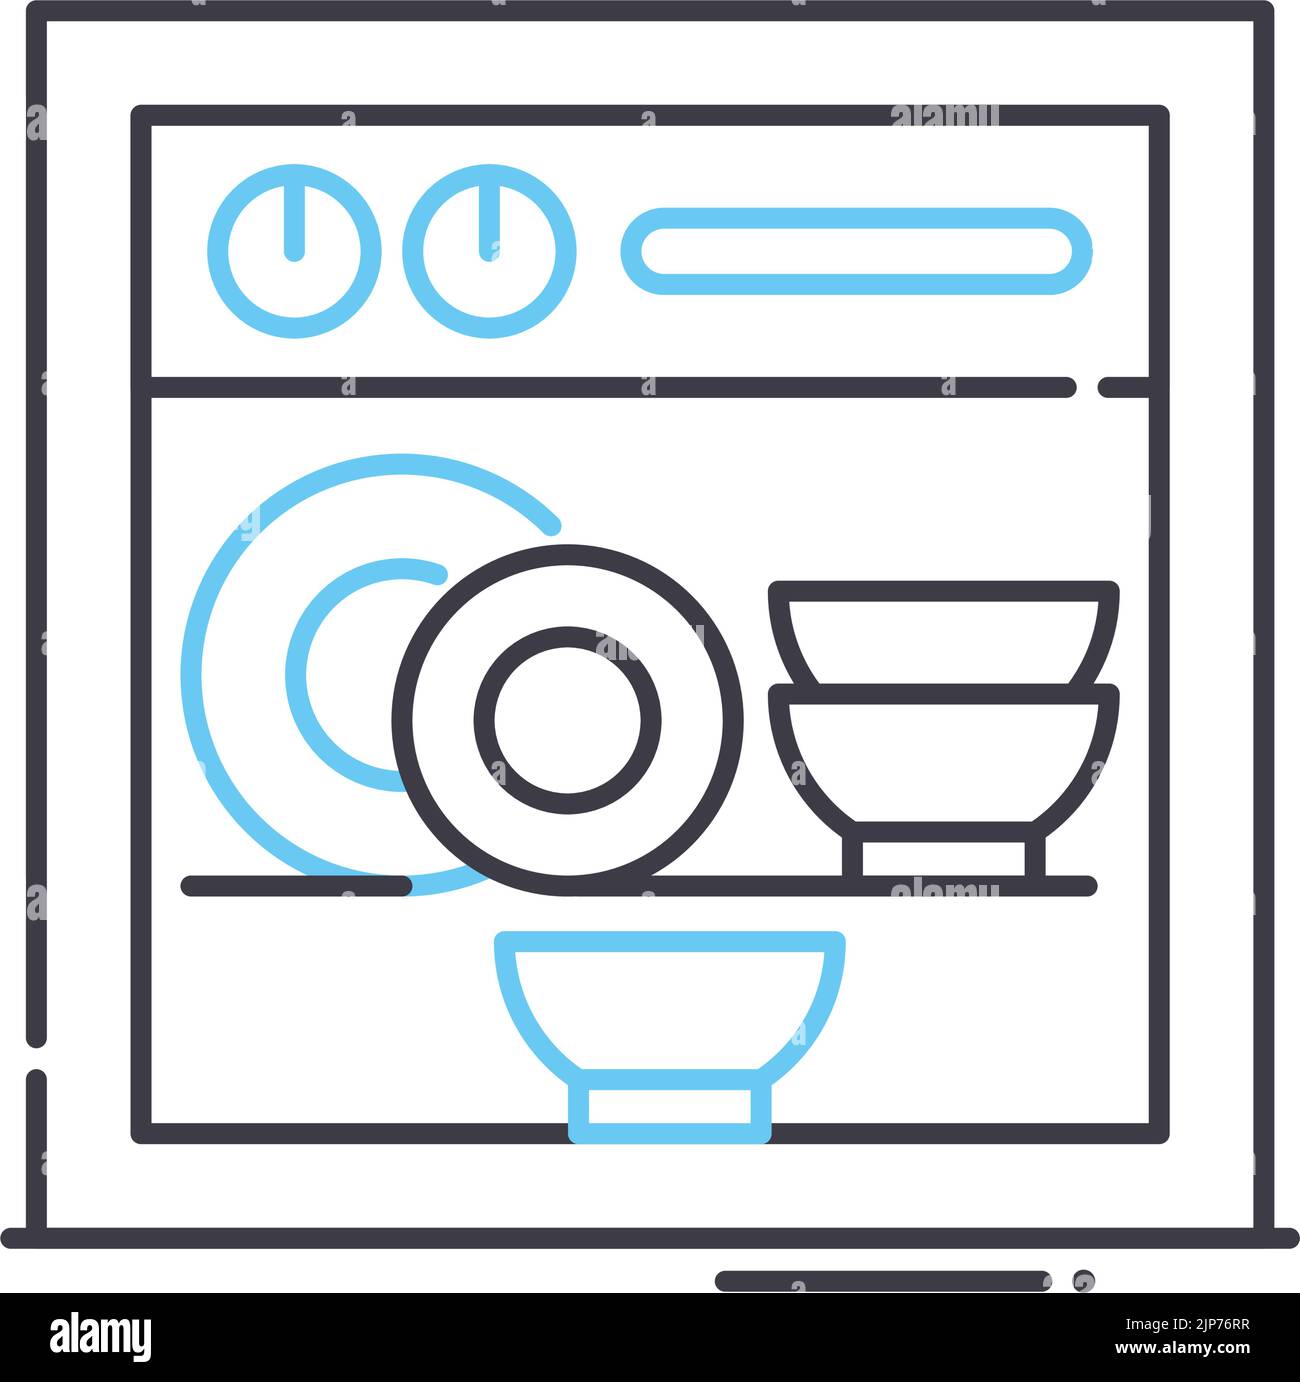 Symbole pour lavage lave vaisselle Banque d'images détourées - Page 2 -  Alamy